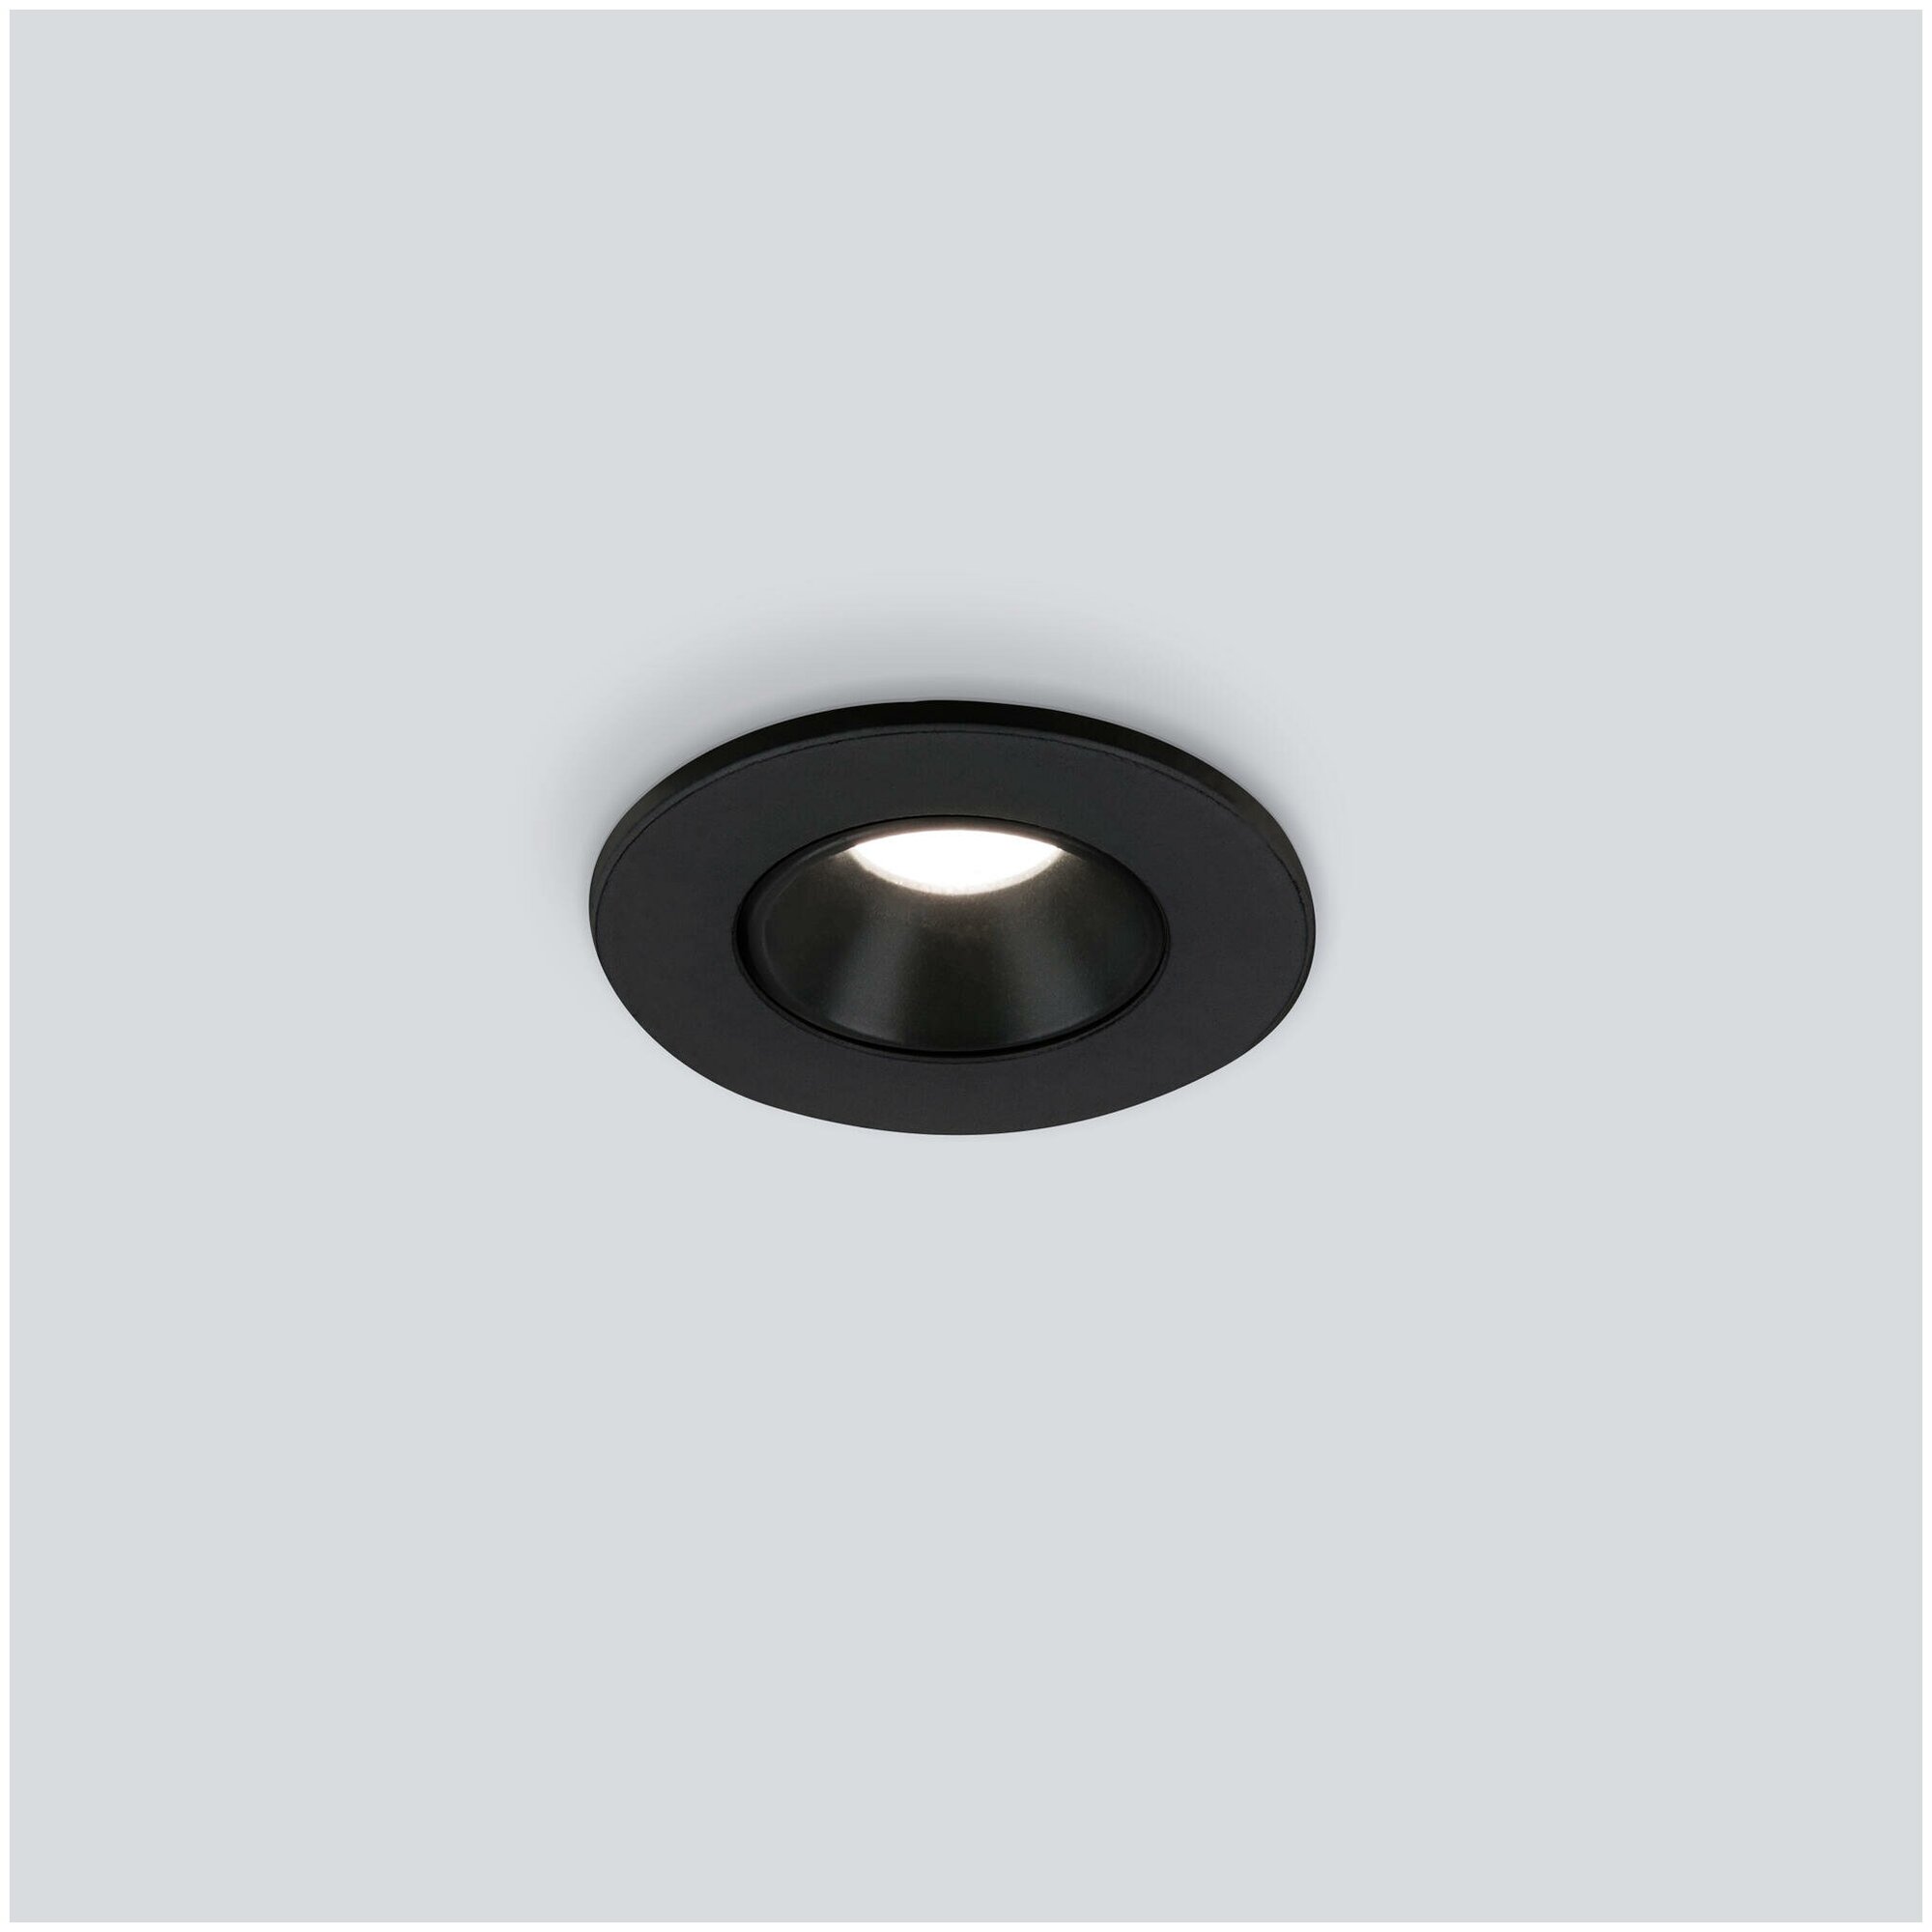 Встраиваемый точечный светодиодный светильник Elektrostandard 25025/LED 3W 4200K BK цвет черный